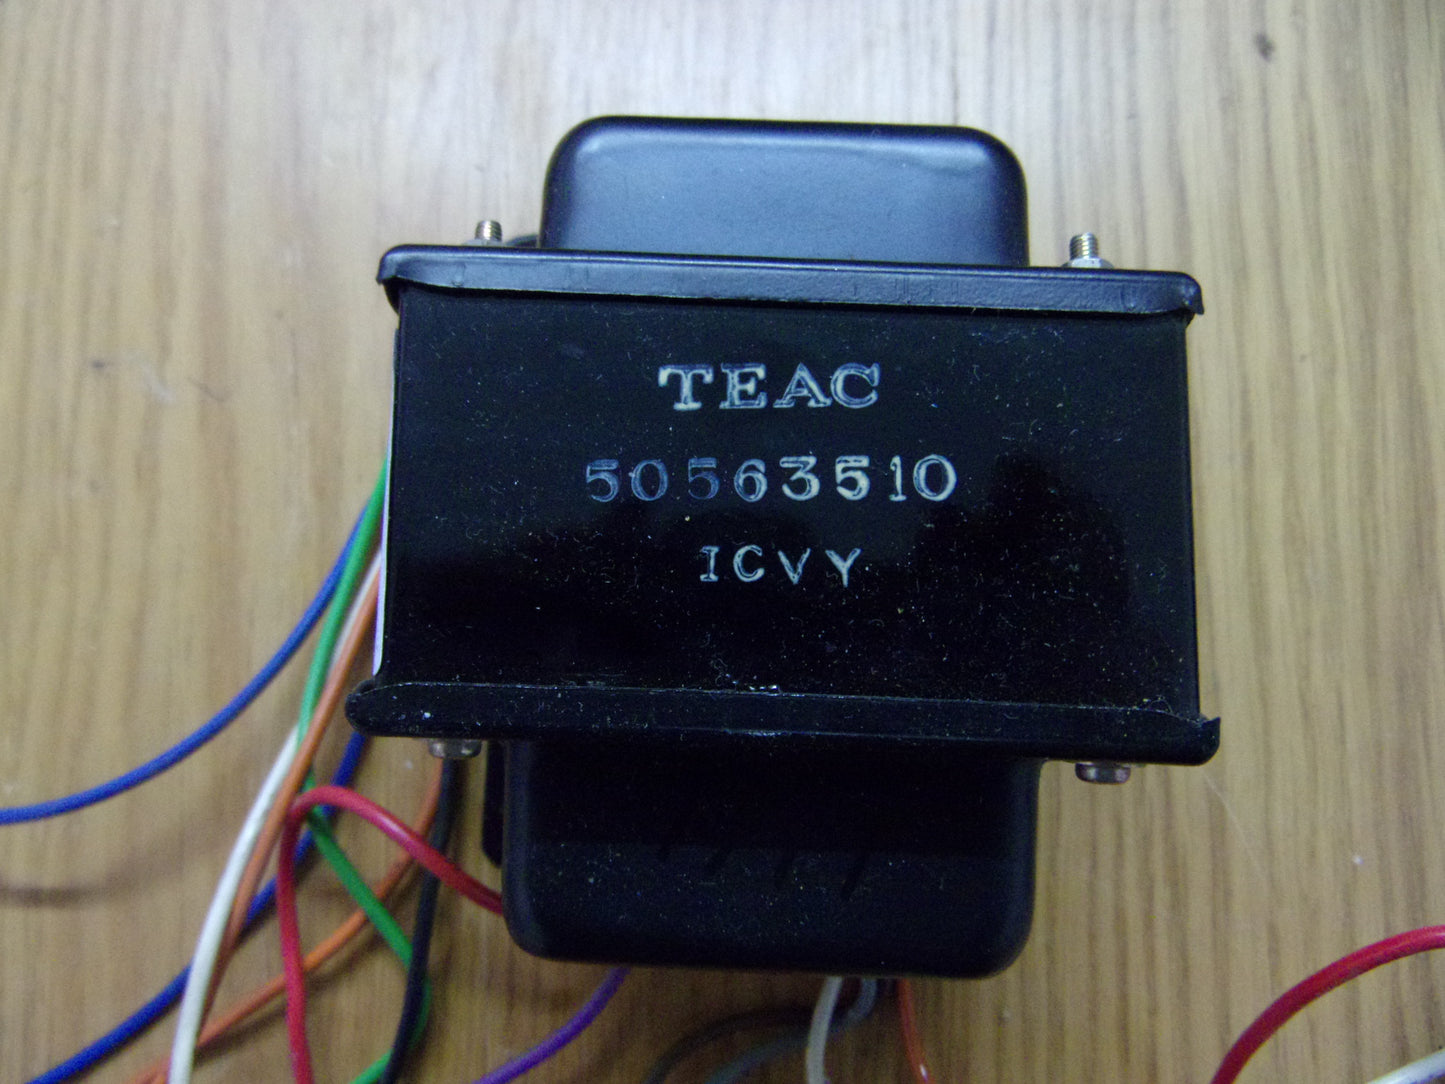 Teac A-2300SX power transformer 50563510